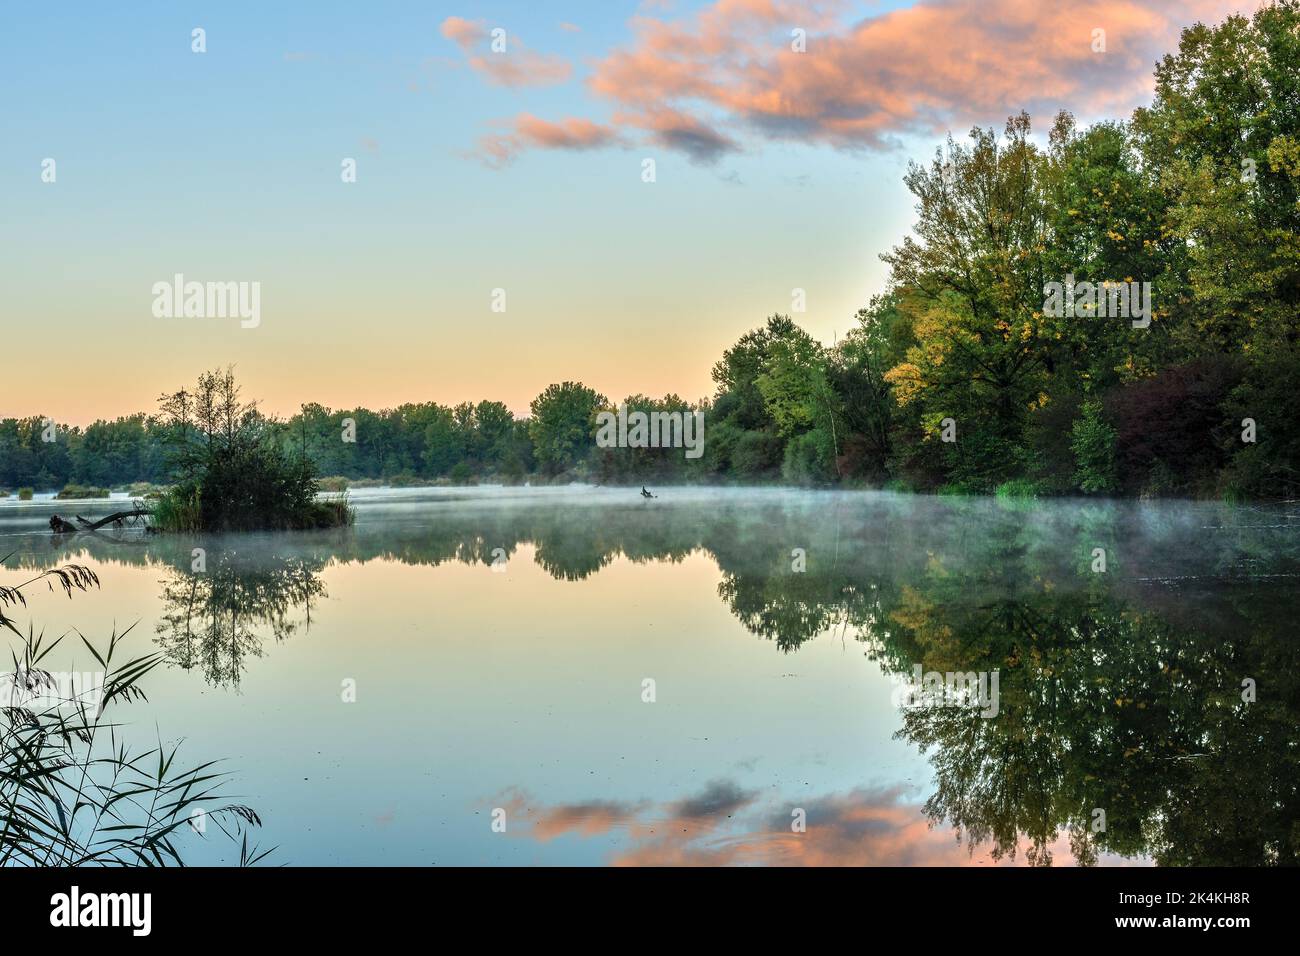 See bei Sonnenaufgang mit blauem Himmel und orangefarbener Wolke, ruhige Wasseroberfläche mit Dunst. Spiegelung. Herbstlandschaft, Natur Europas. Dubnica, Slowakei. Stockfoto